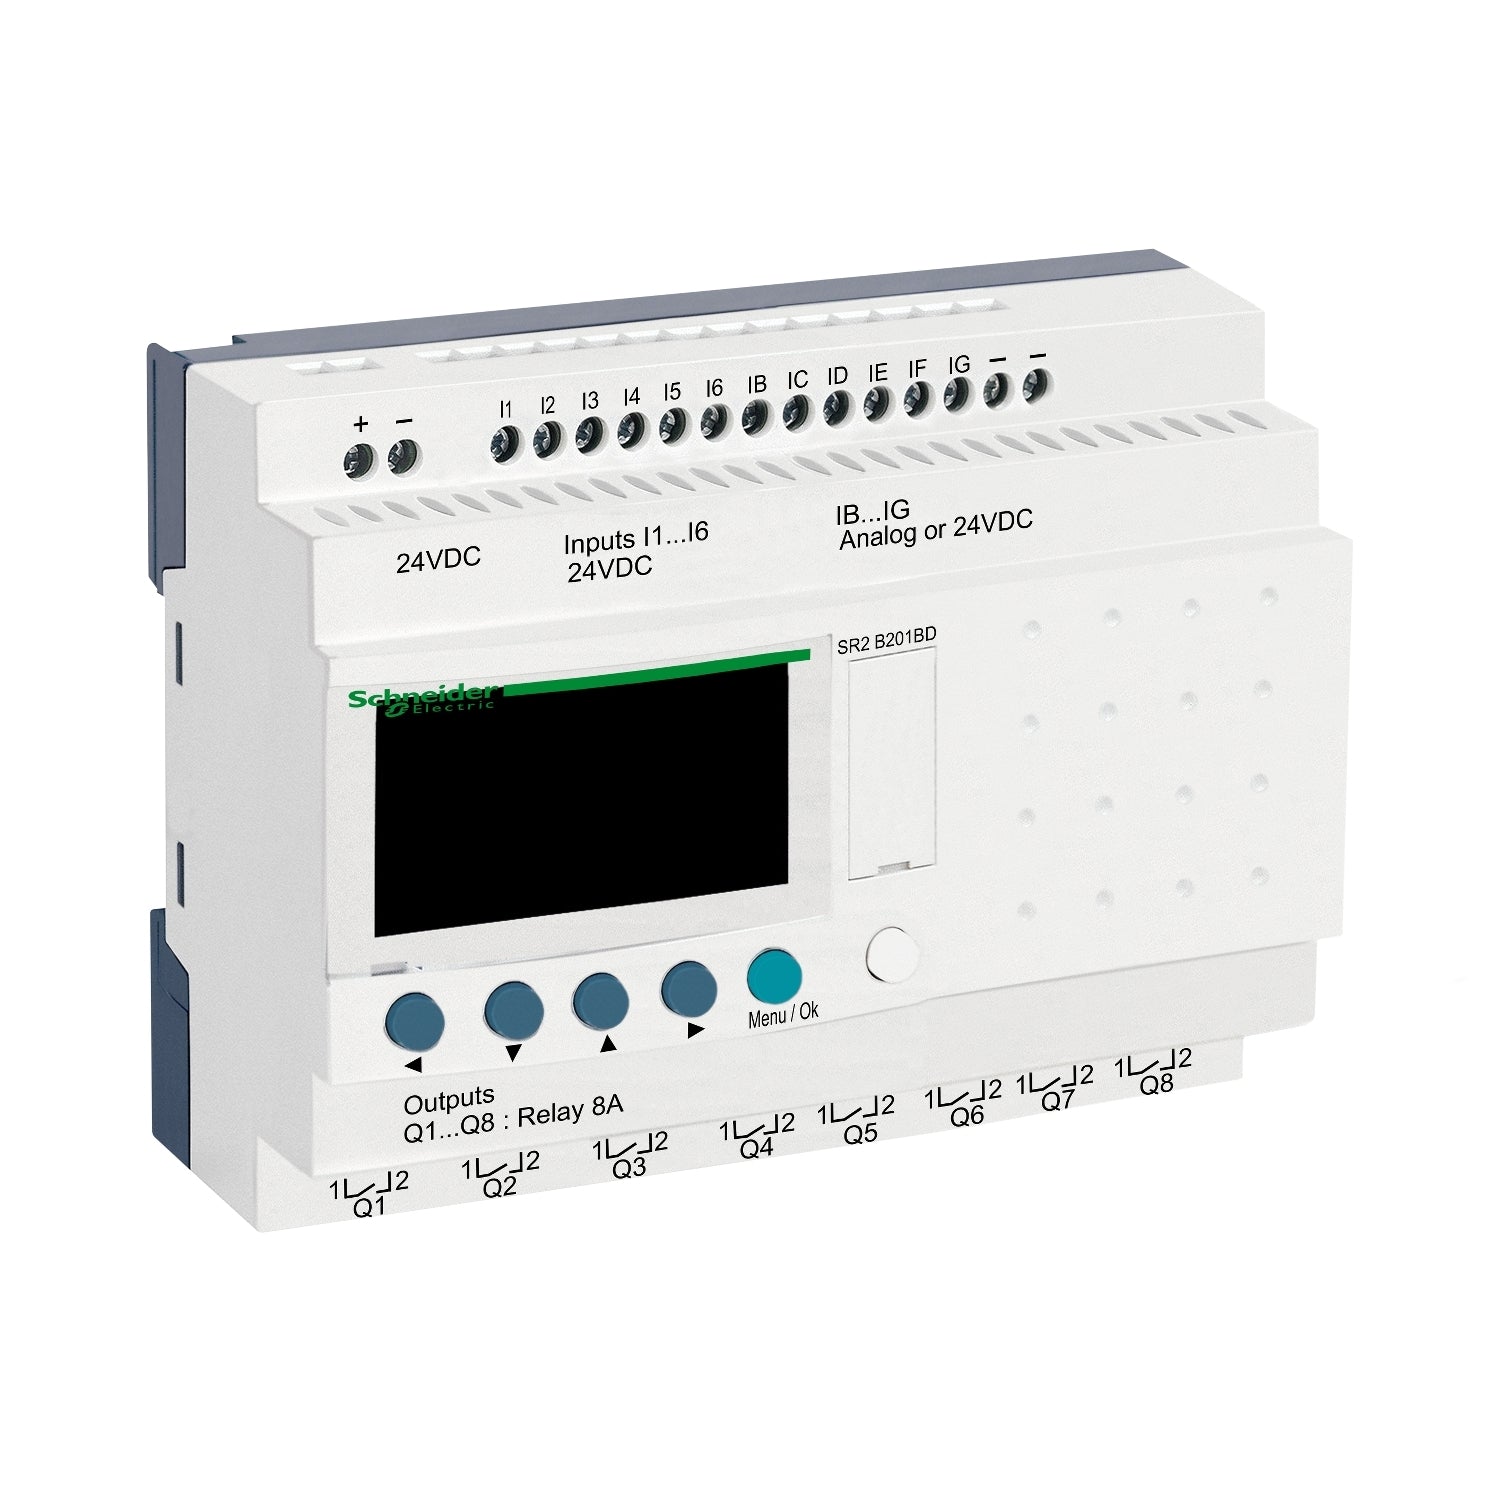 SR2B201BD | Schneider Electric | Compact smart relay, Zelio Logic SR2 SR3, 20 IO, 24V DC, clock, display, 8 relay outputs